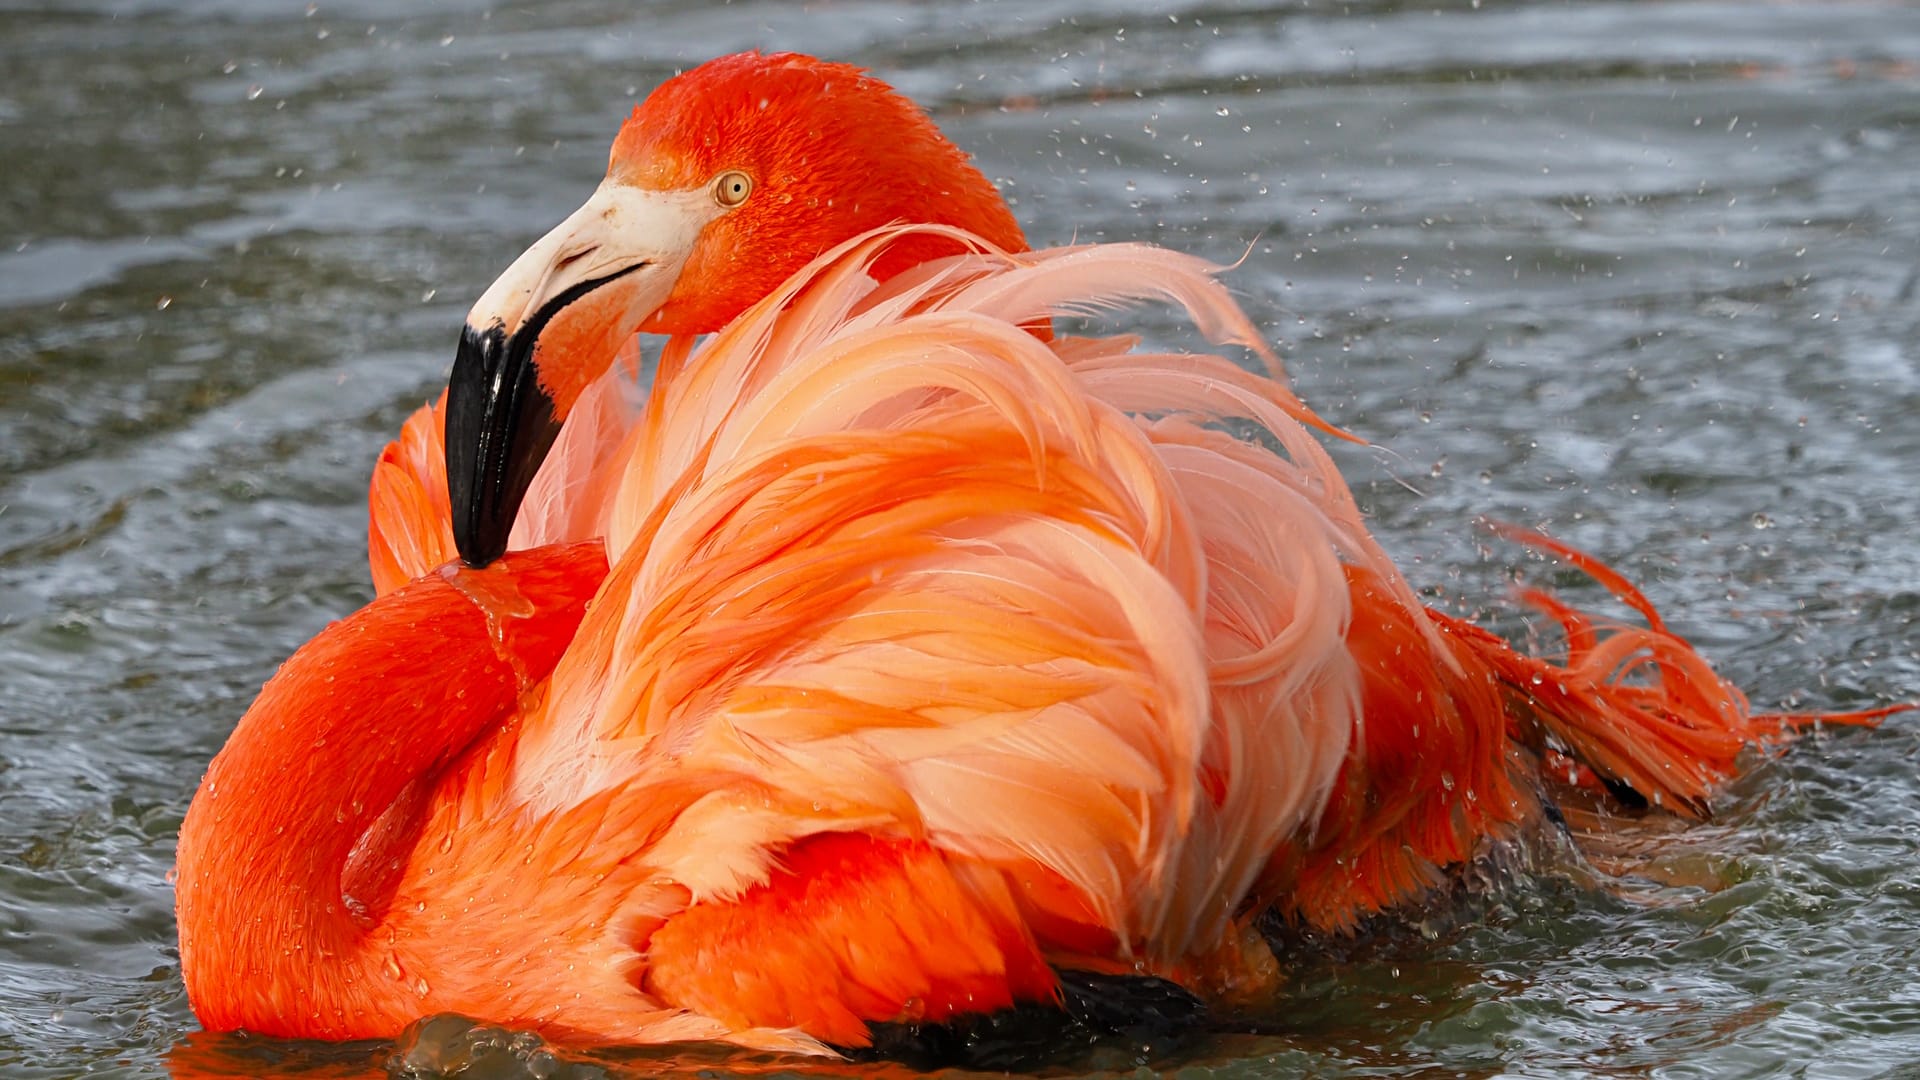 ZSL Whipsnade Zoo - Flamingo